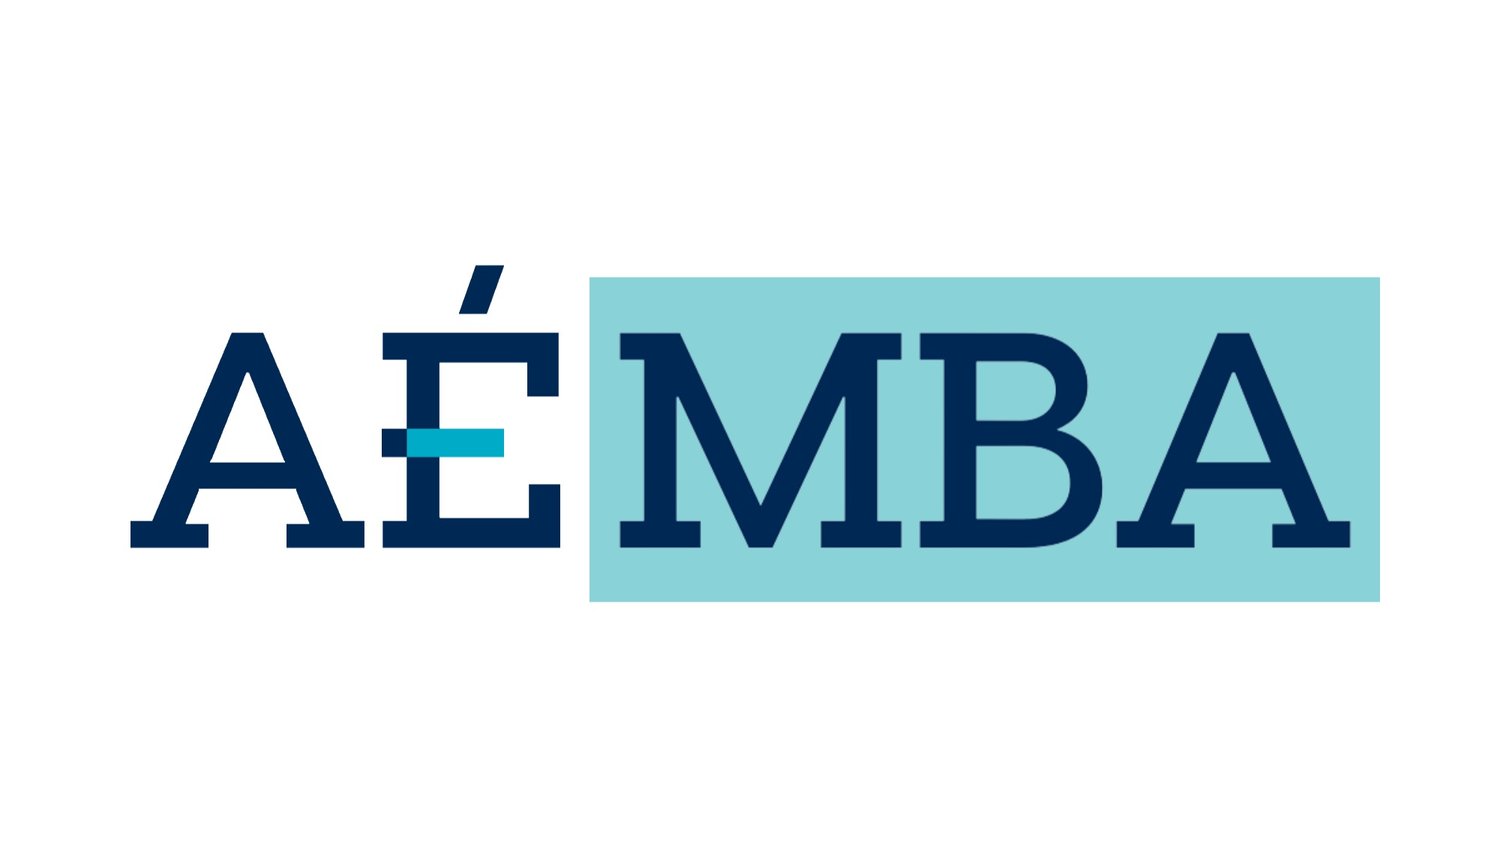 Association des étudiants du MBA - HEC Montréal